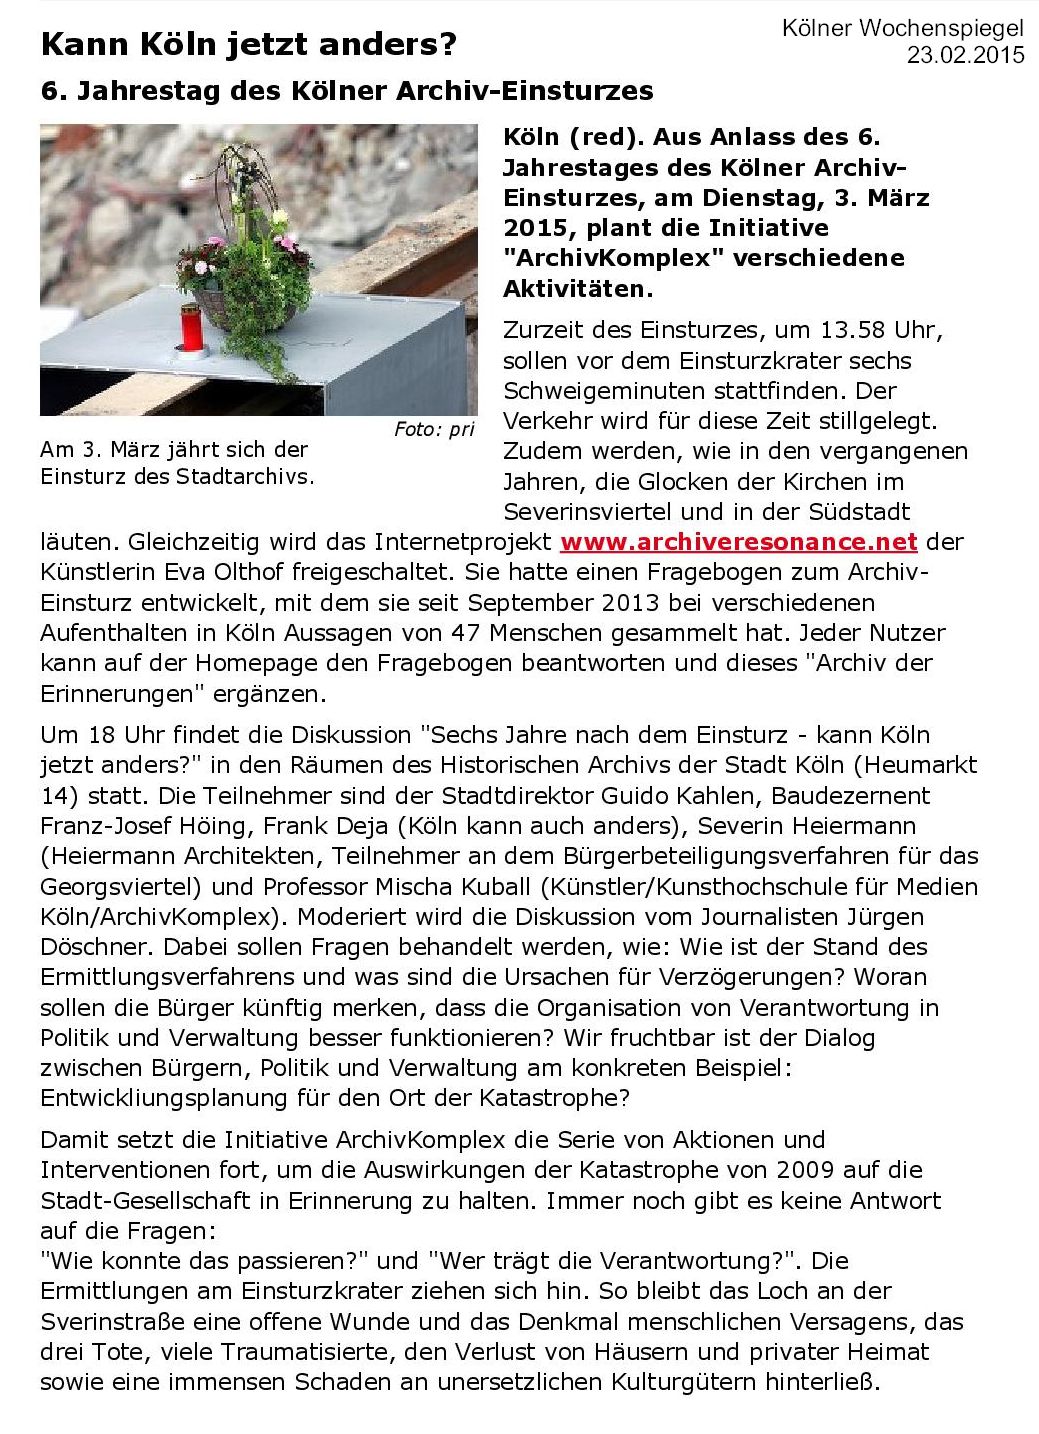 Kölner Wochenspiegel 23.2.15